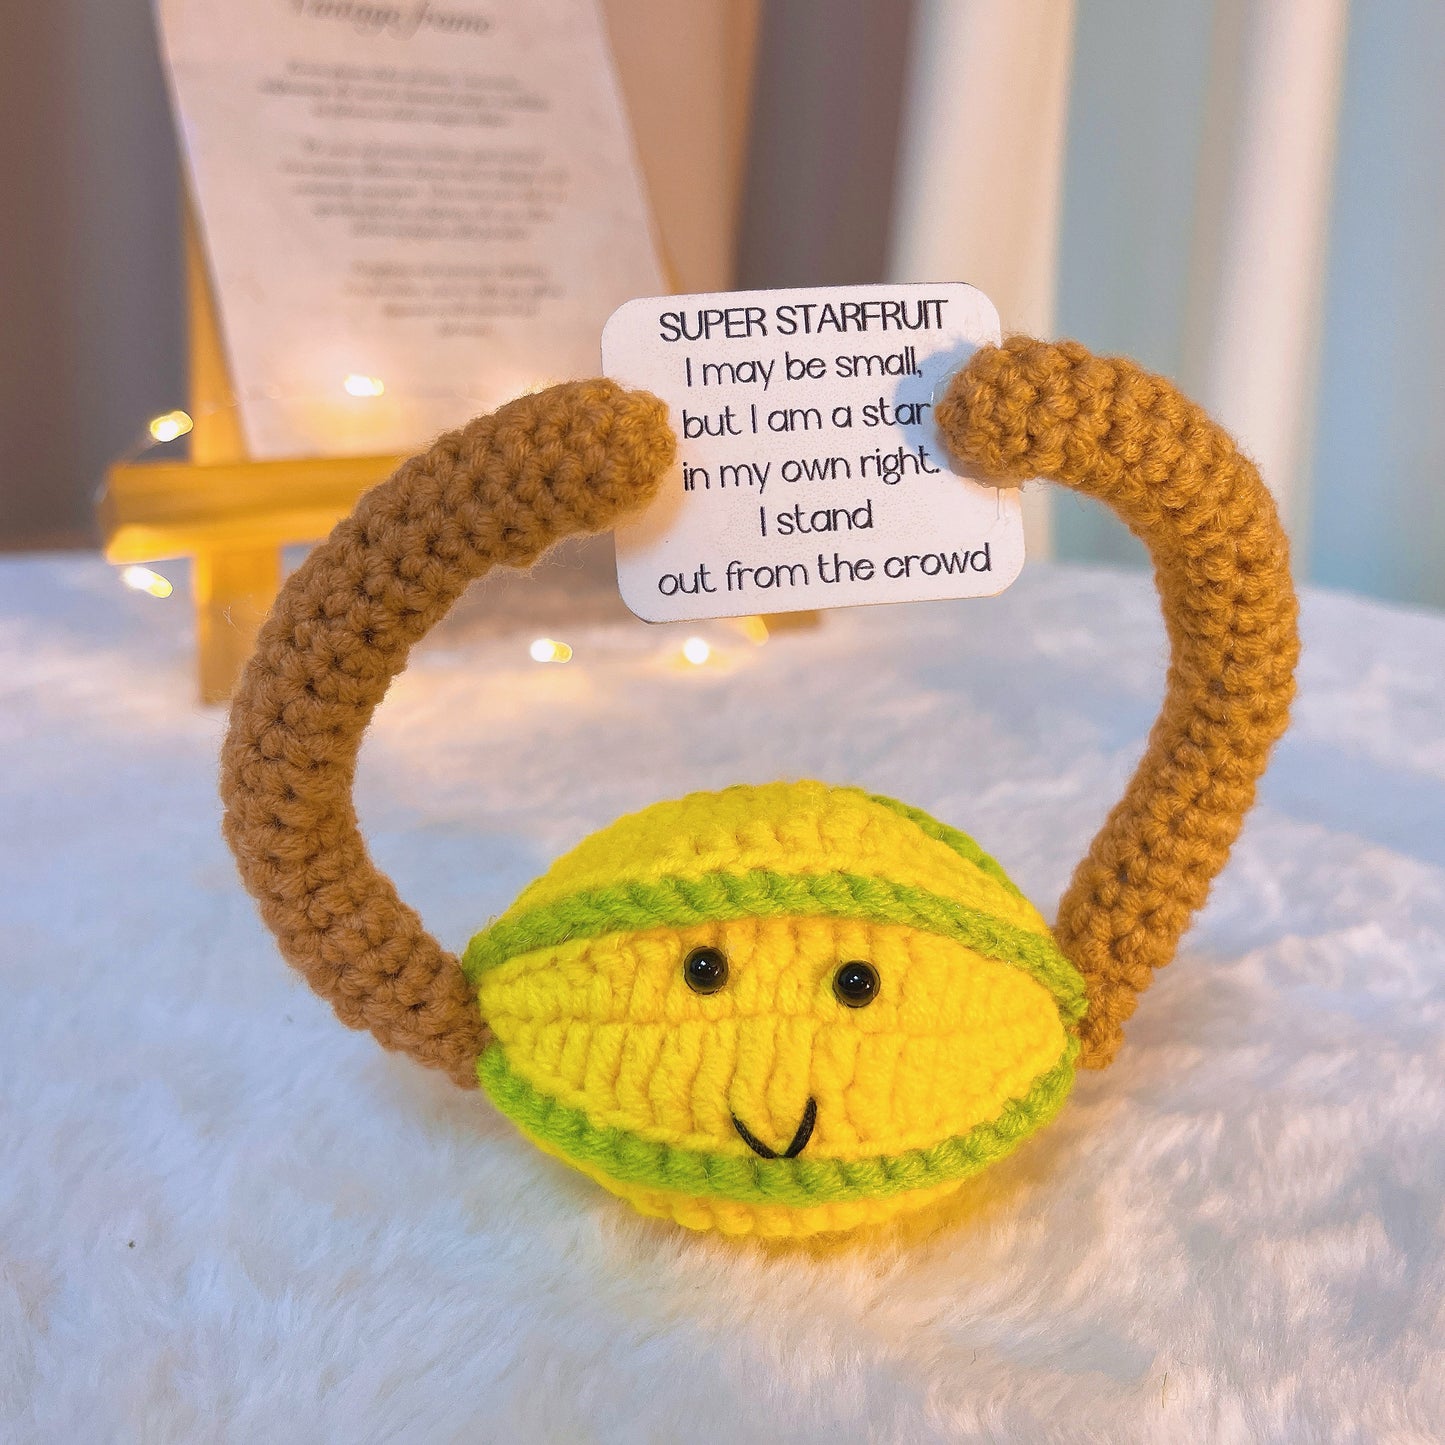 Handgefertigte Super Starfruit Positive mit anpassbarer inspirierender Botschaft - Aufmunterndes Geschenk zum Schulabschluss, Jobwechsel oder Uniabschluss